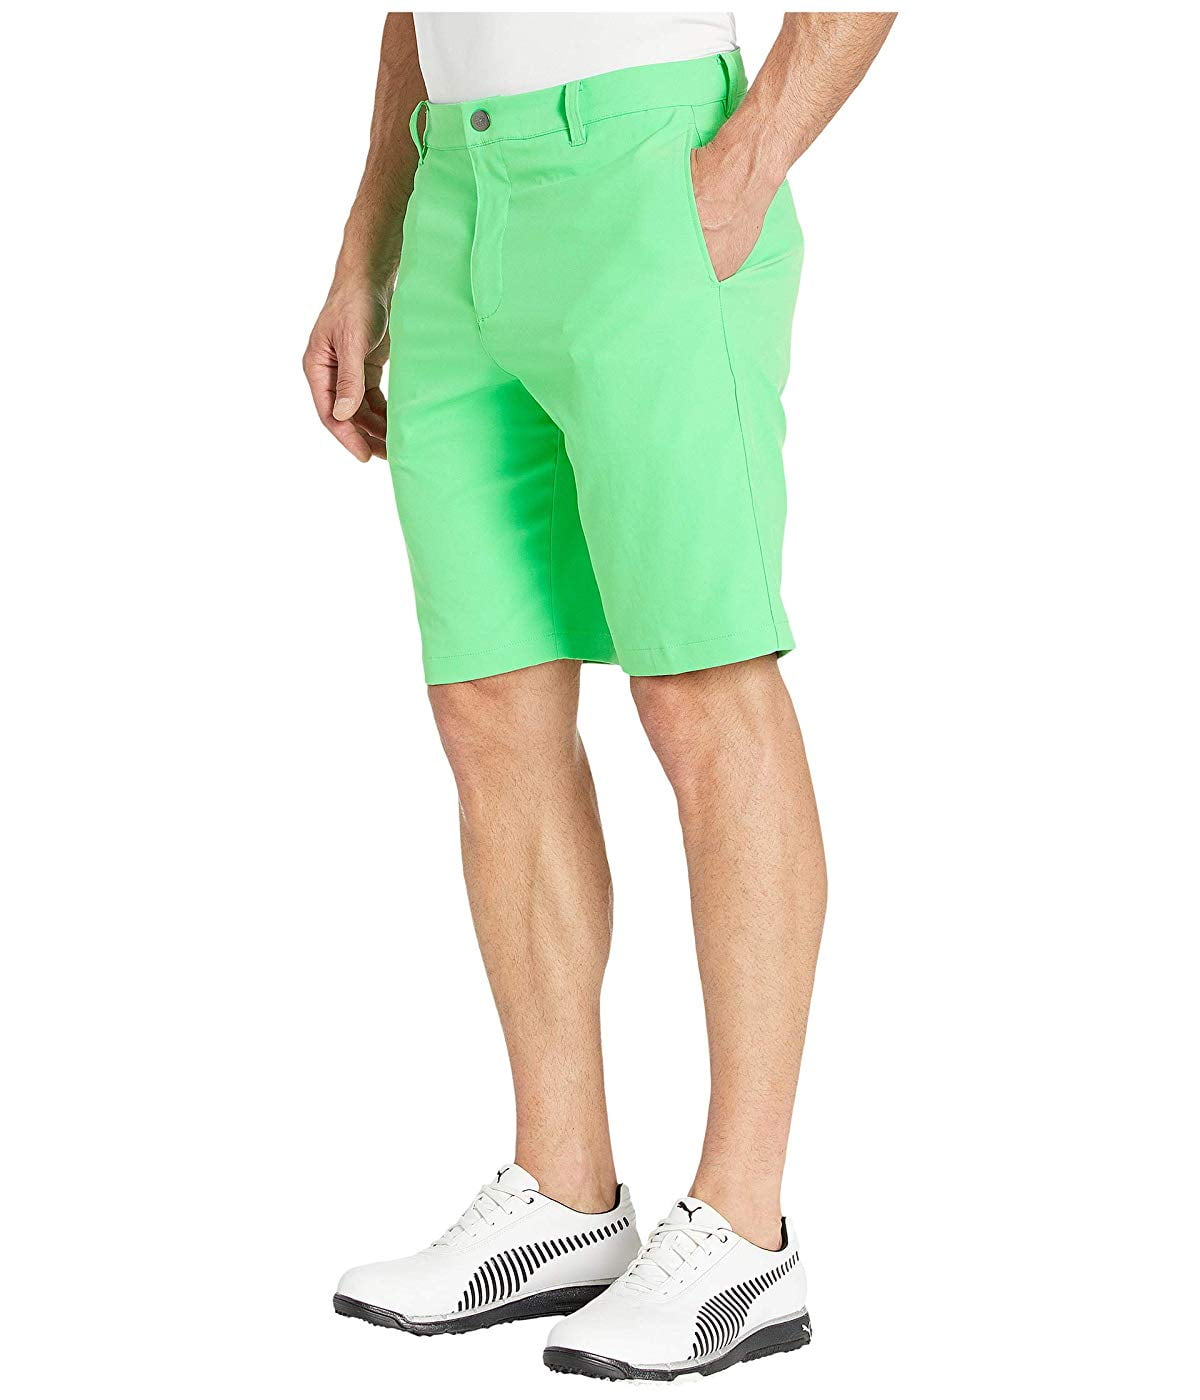 PUMA Golf Jackpot Shorts Irish Green - Walmart.com